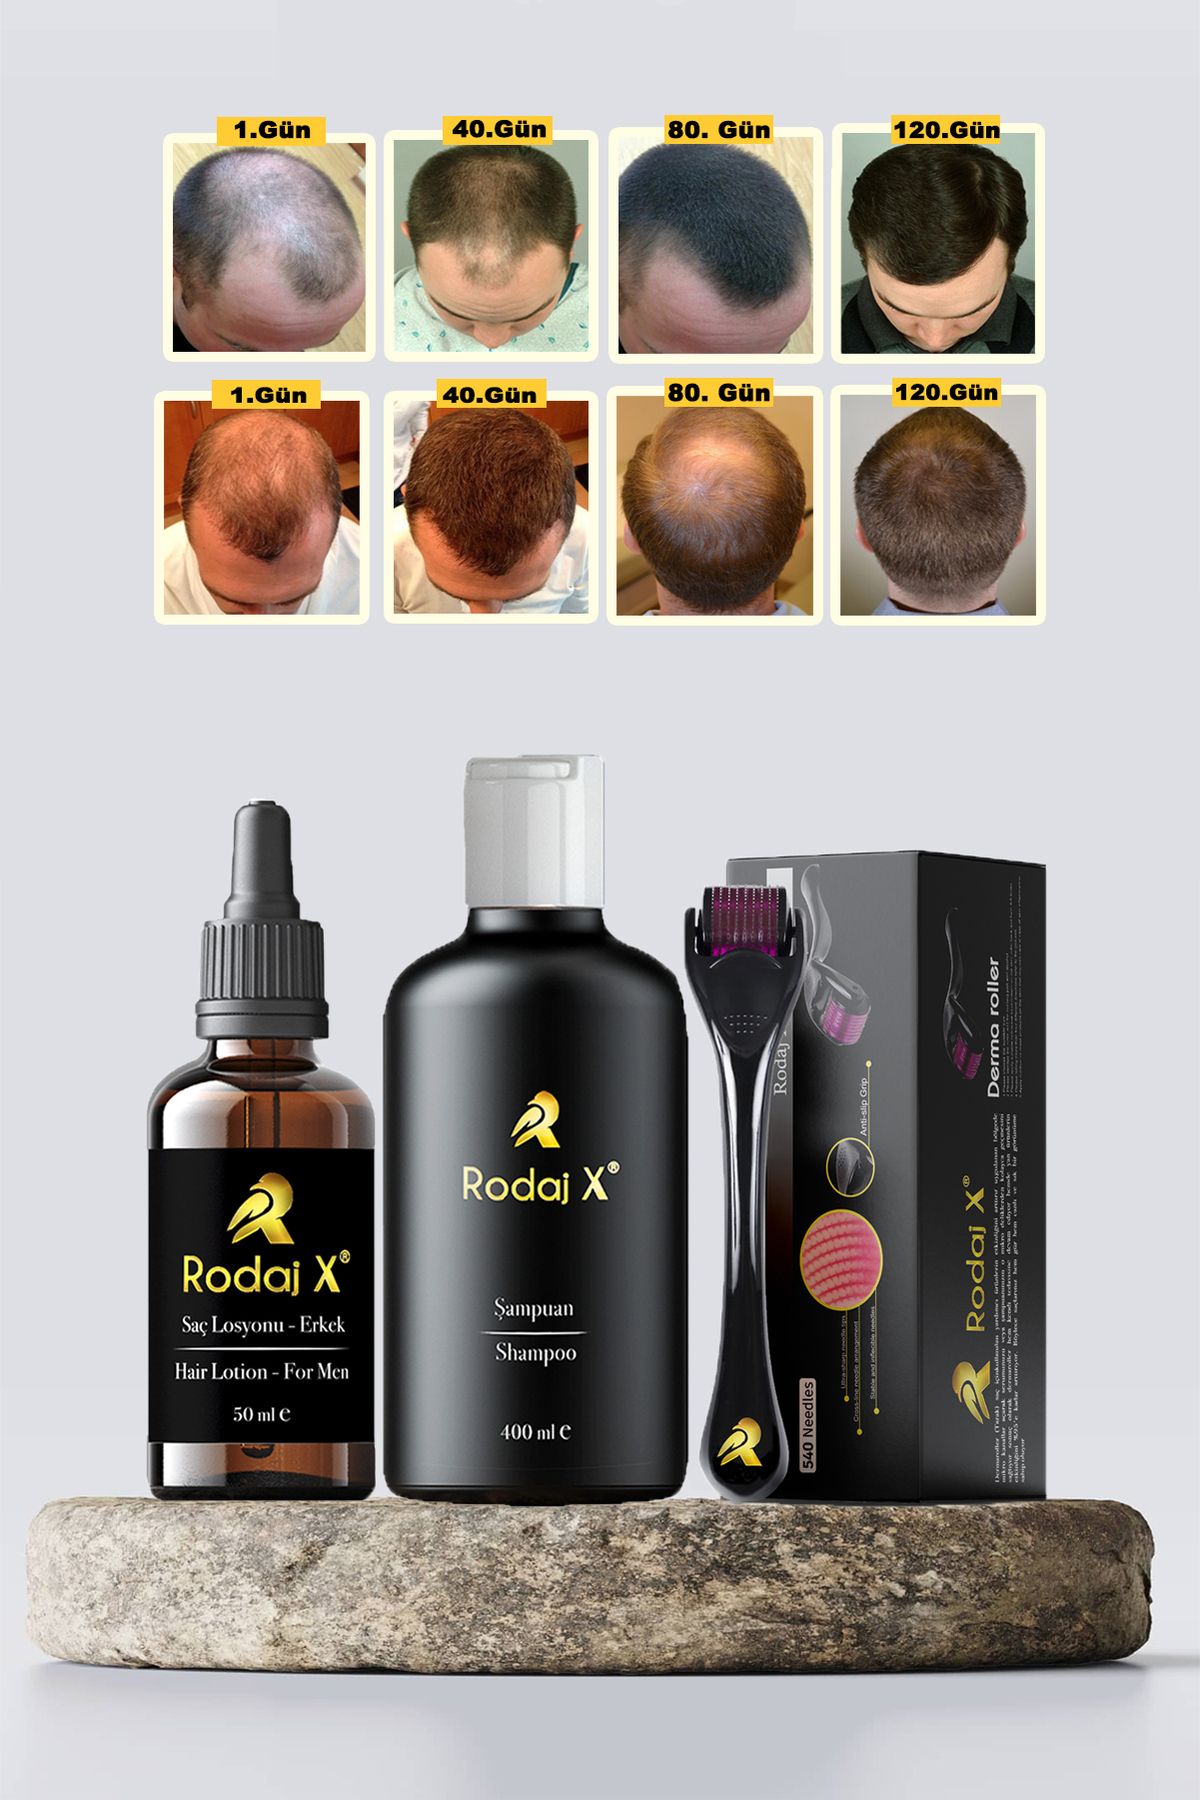 Rodaj X Erkek Saç Çıkarmaya Yardımcı Serum - Dökülme Önleyici Şampuan - Dermaroller